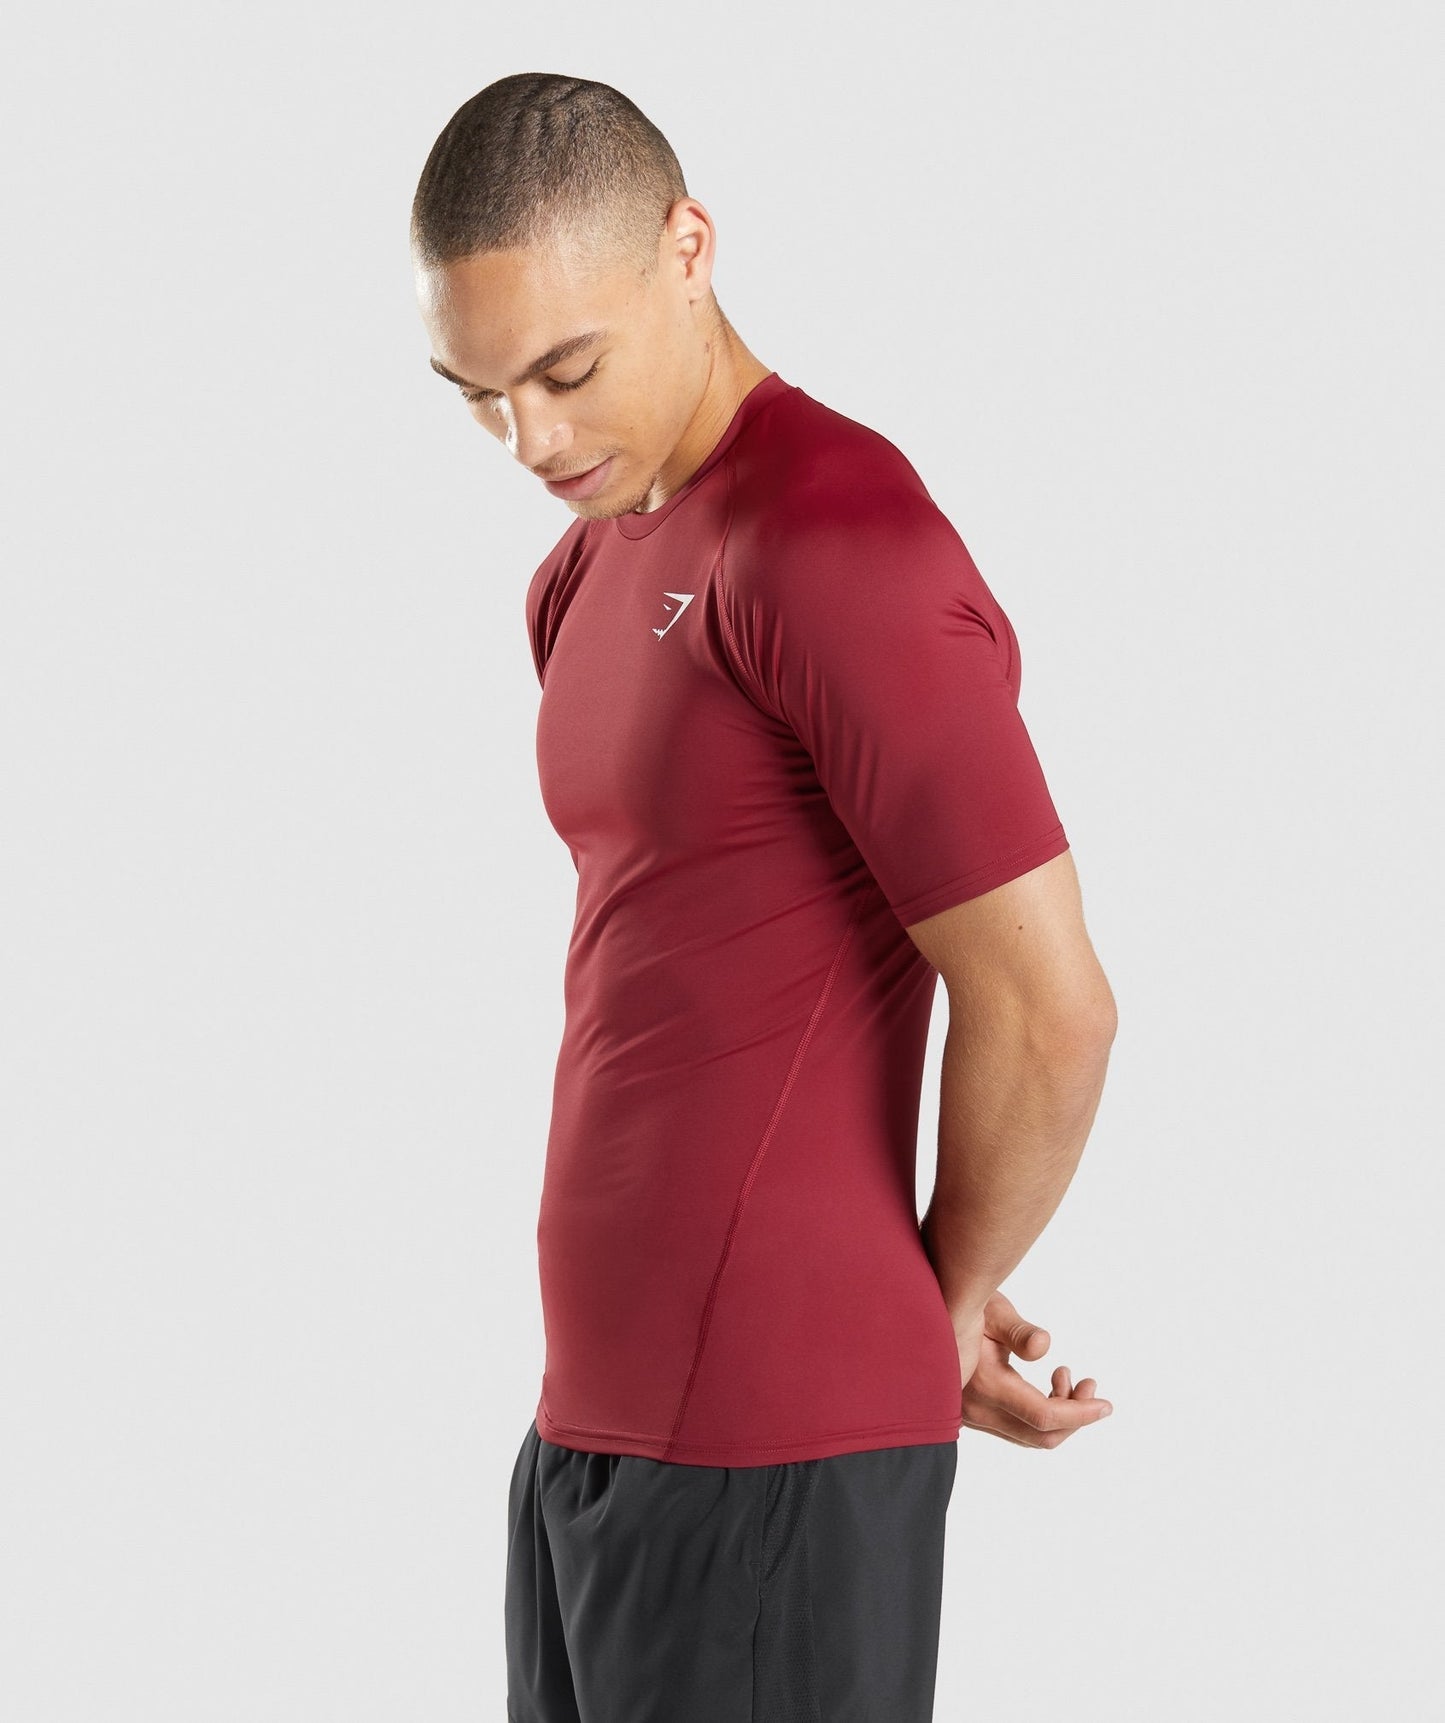 Gymshark Element Baselayer T-Shirt - Burgundy – Client 446 100K